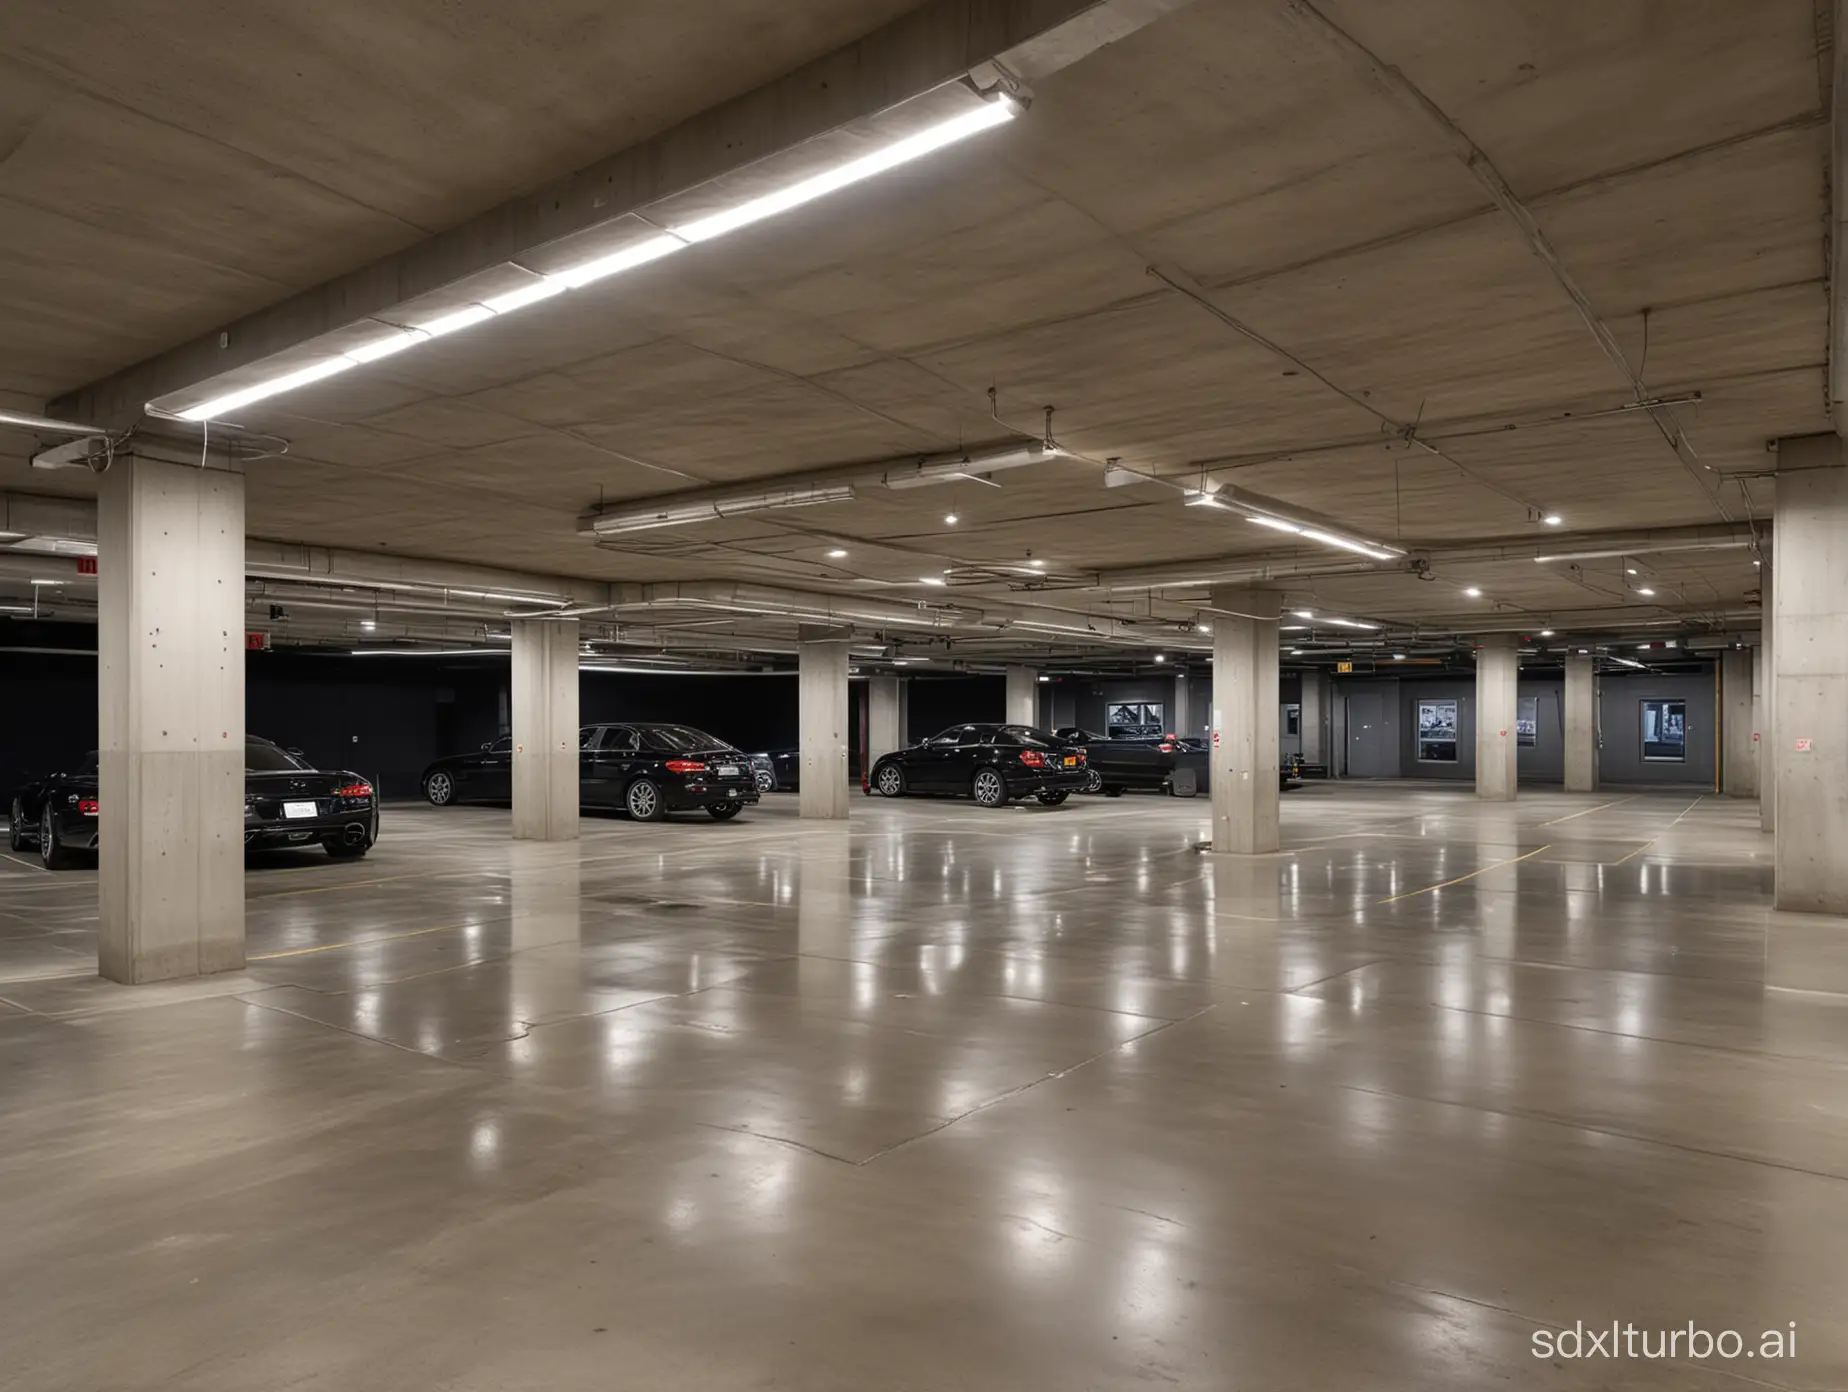 Elegant-Vehicle-Showcase-in-a-Chic-Underground-Garage